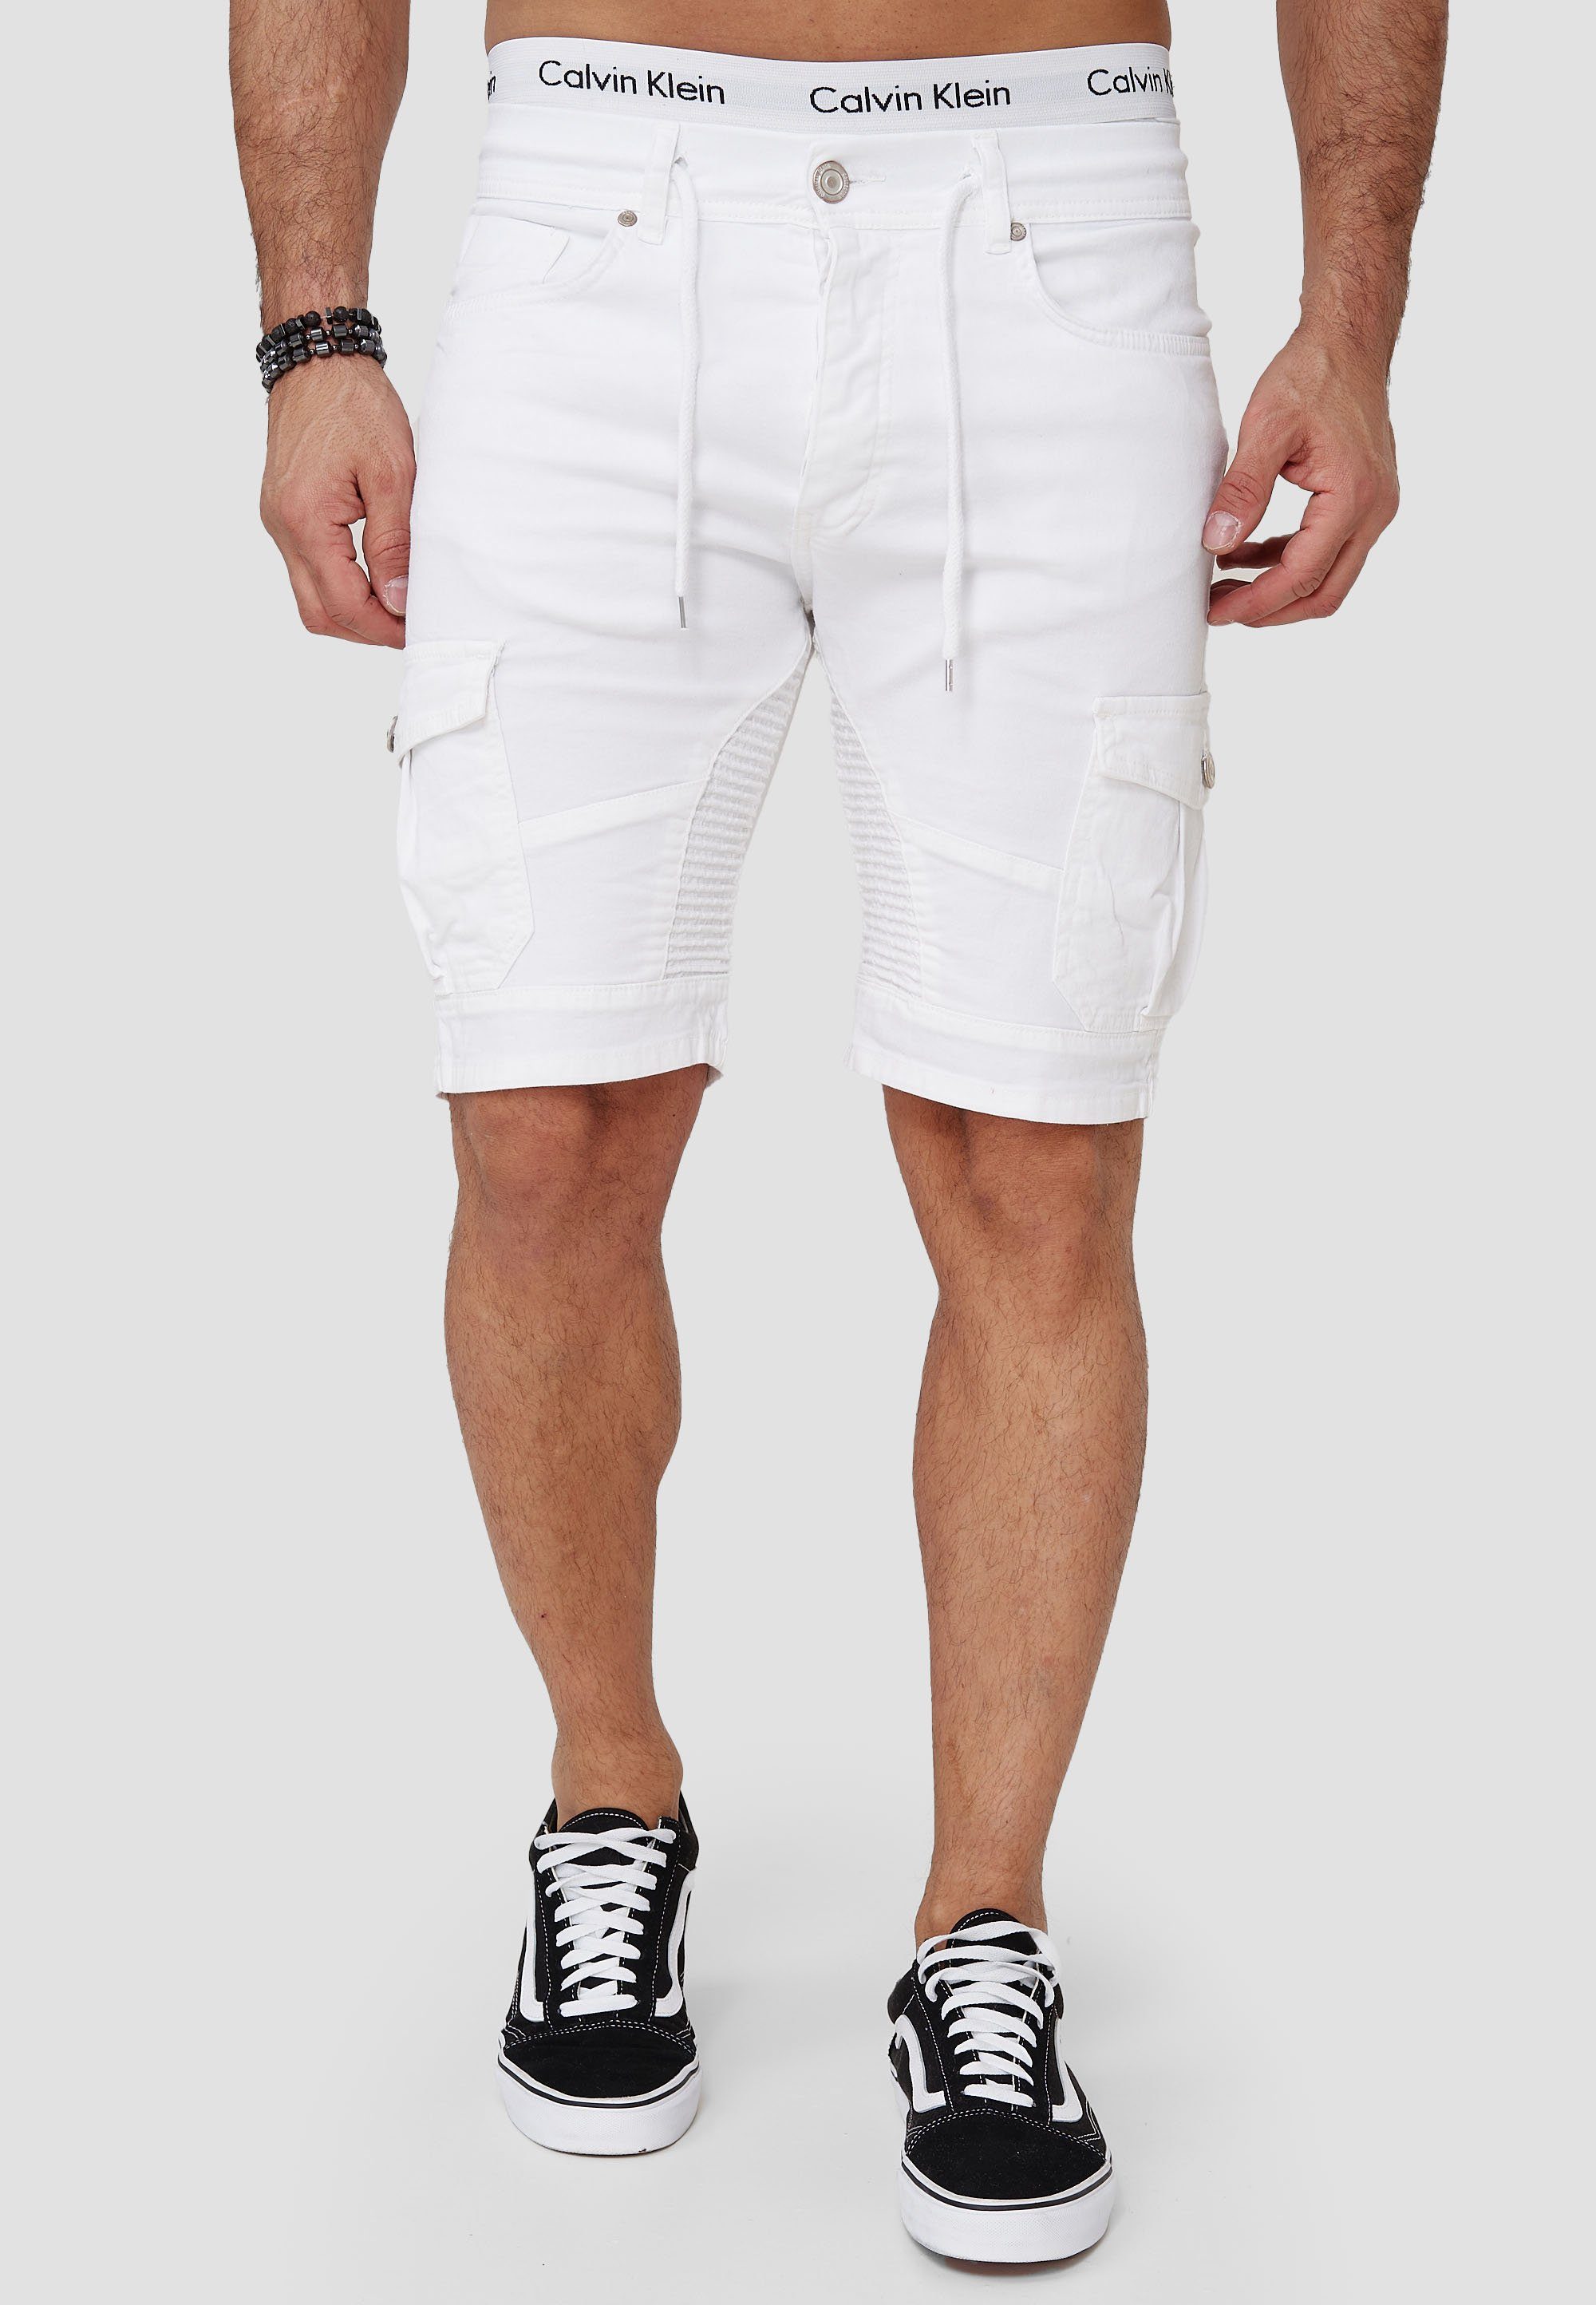 Weiße Herren Jeans Shorts online kaufen | OTTO